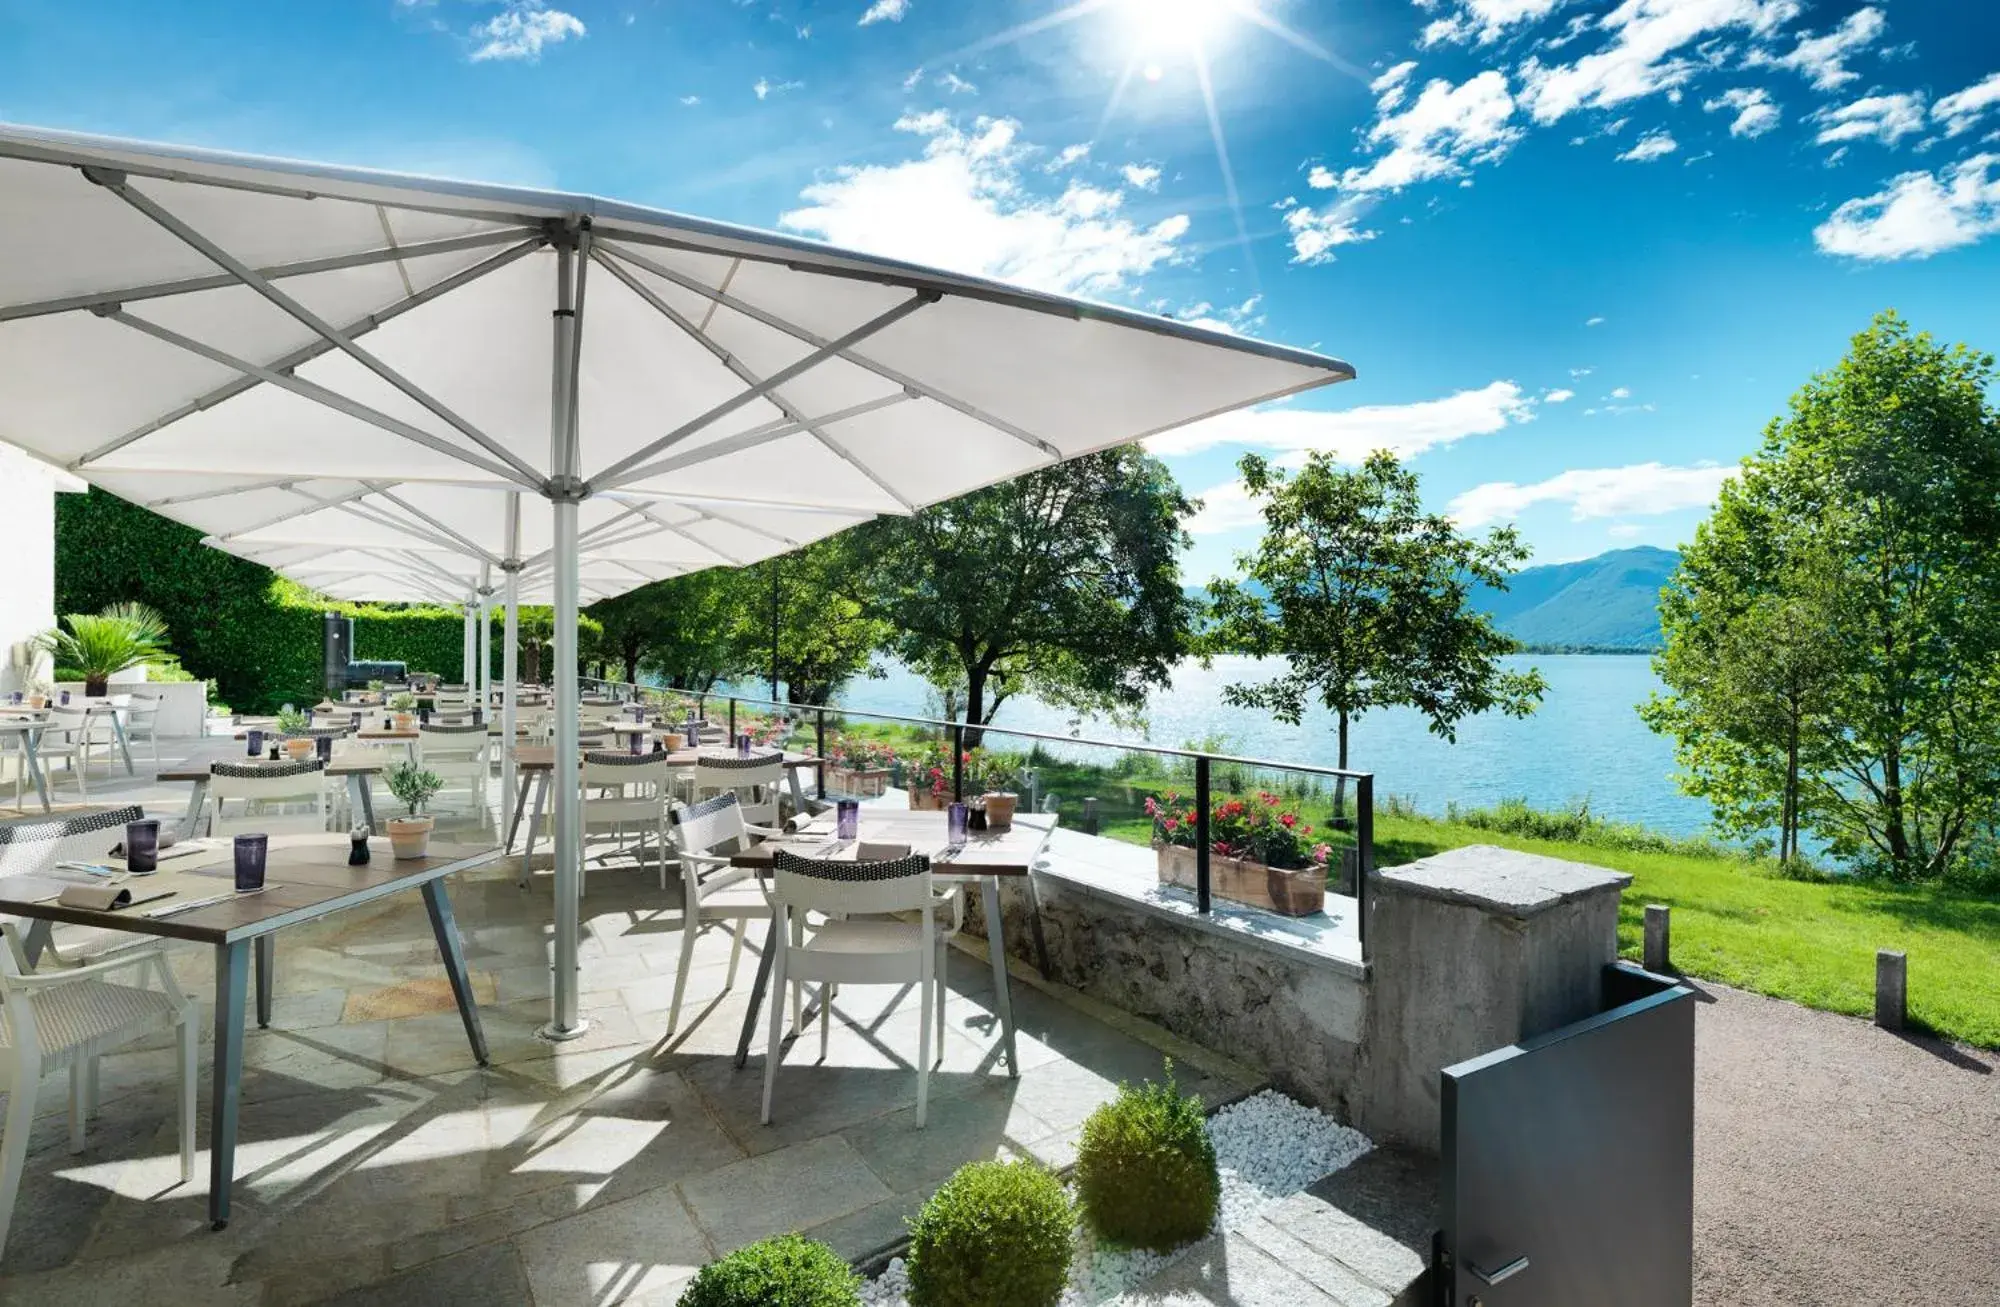 Restaurant/places to eat in Giardino Lago